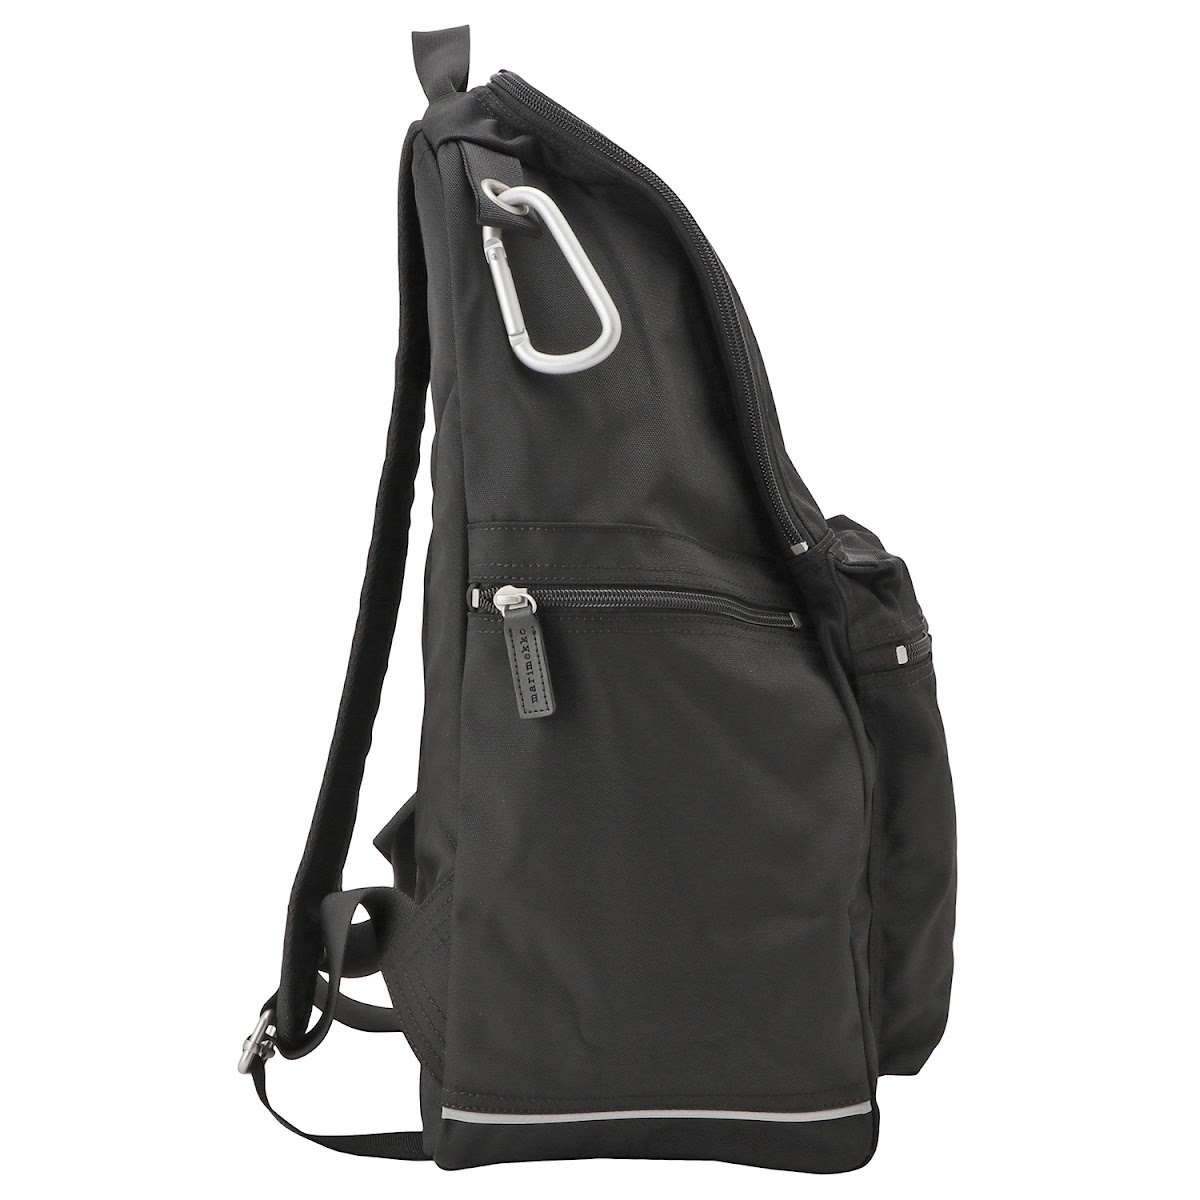 マリメッコ marimekko 026994 999 バディ バックパック リュックサック ブラック レディース メンズ ユニセックス Buddy backpack